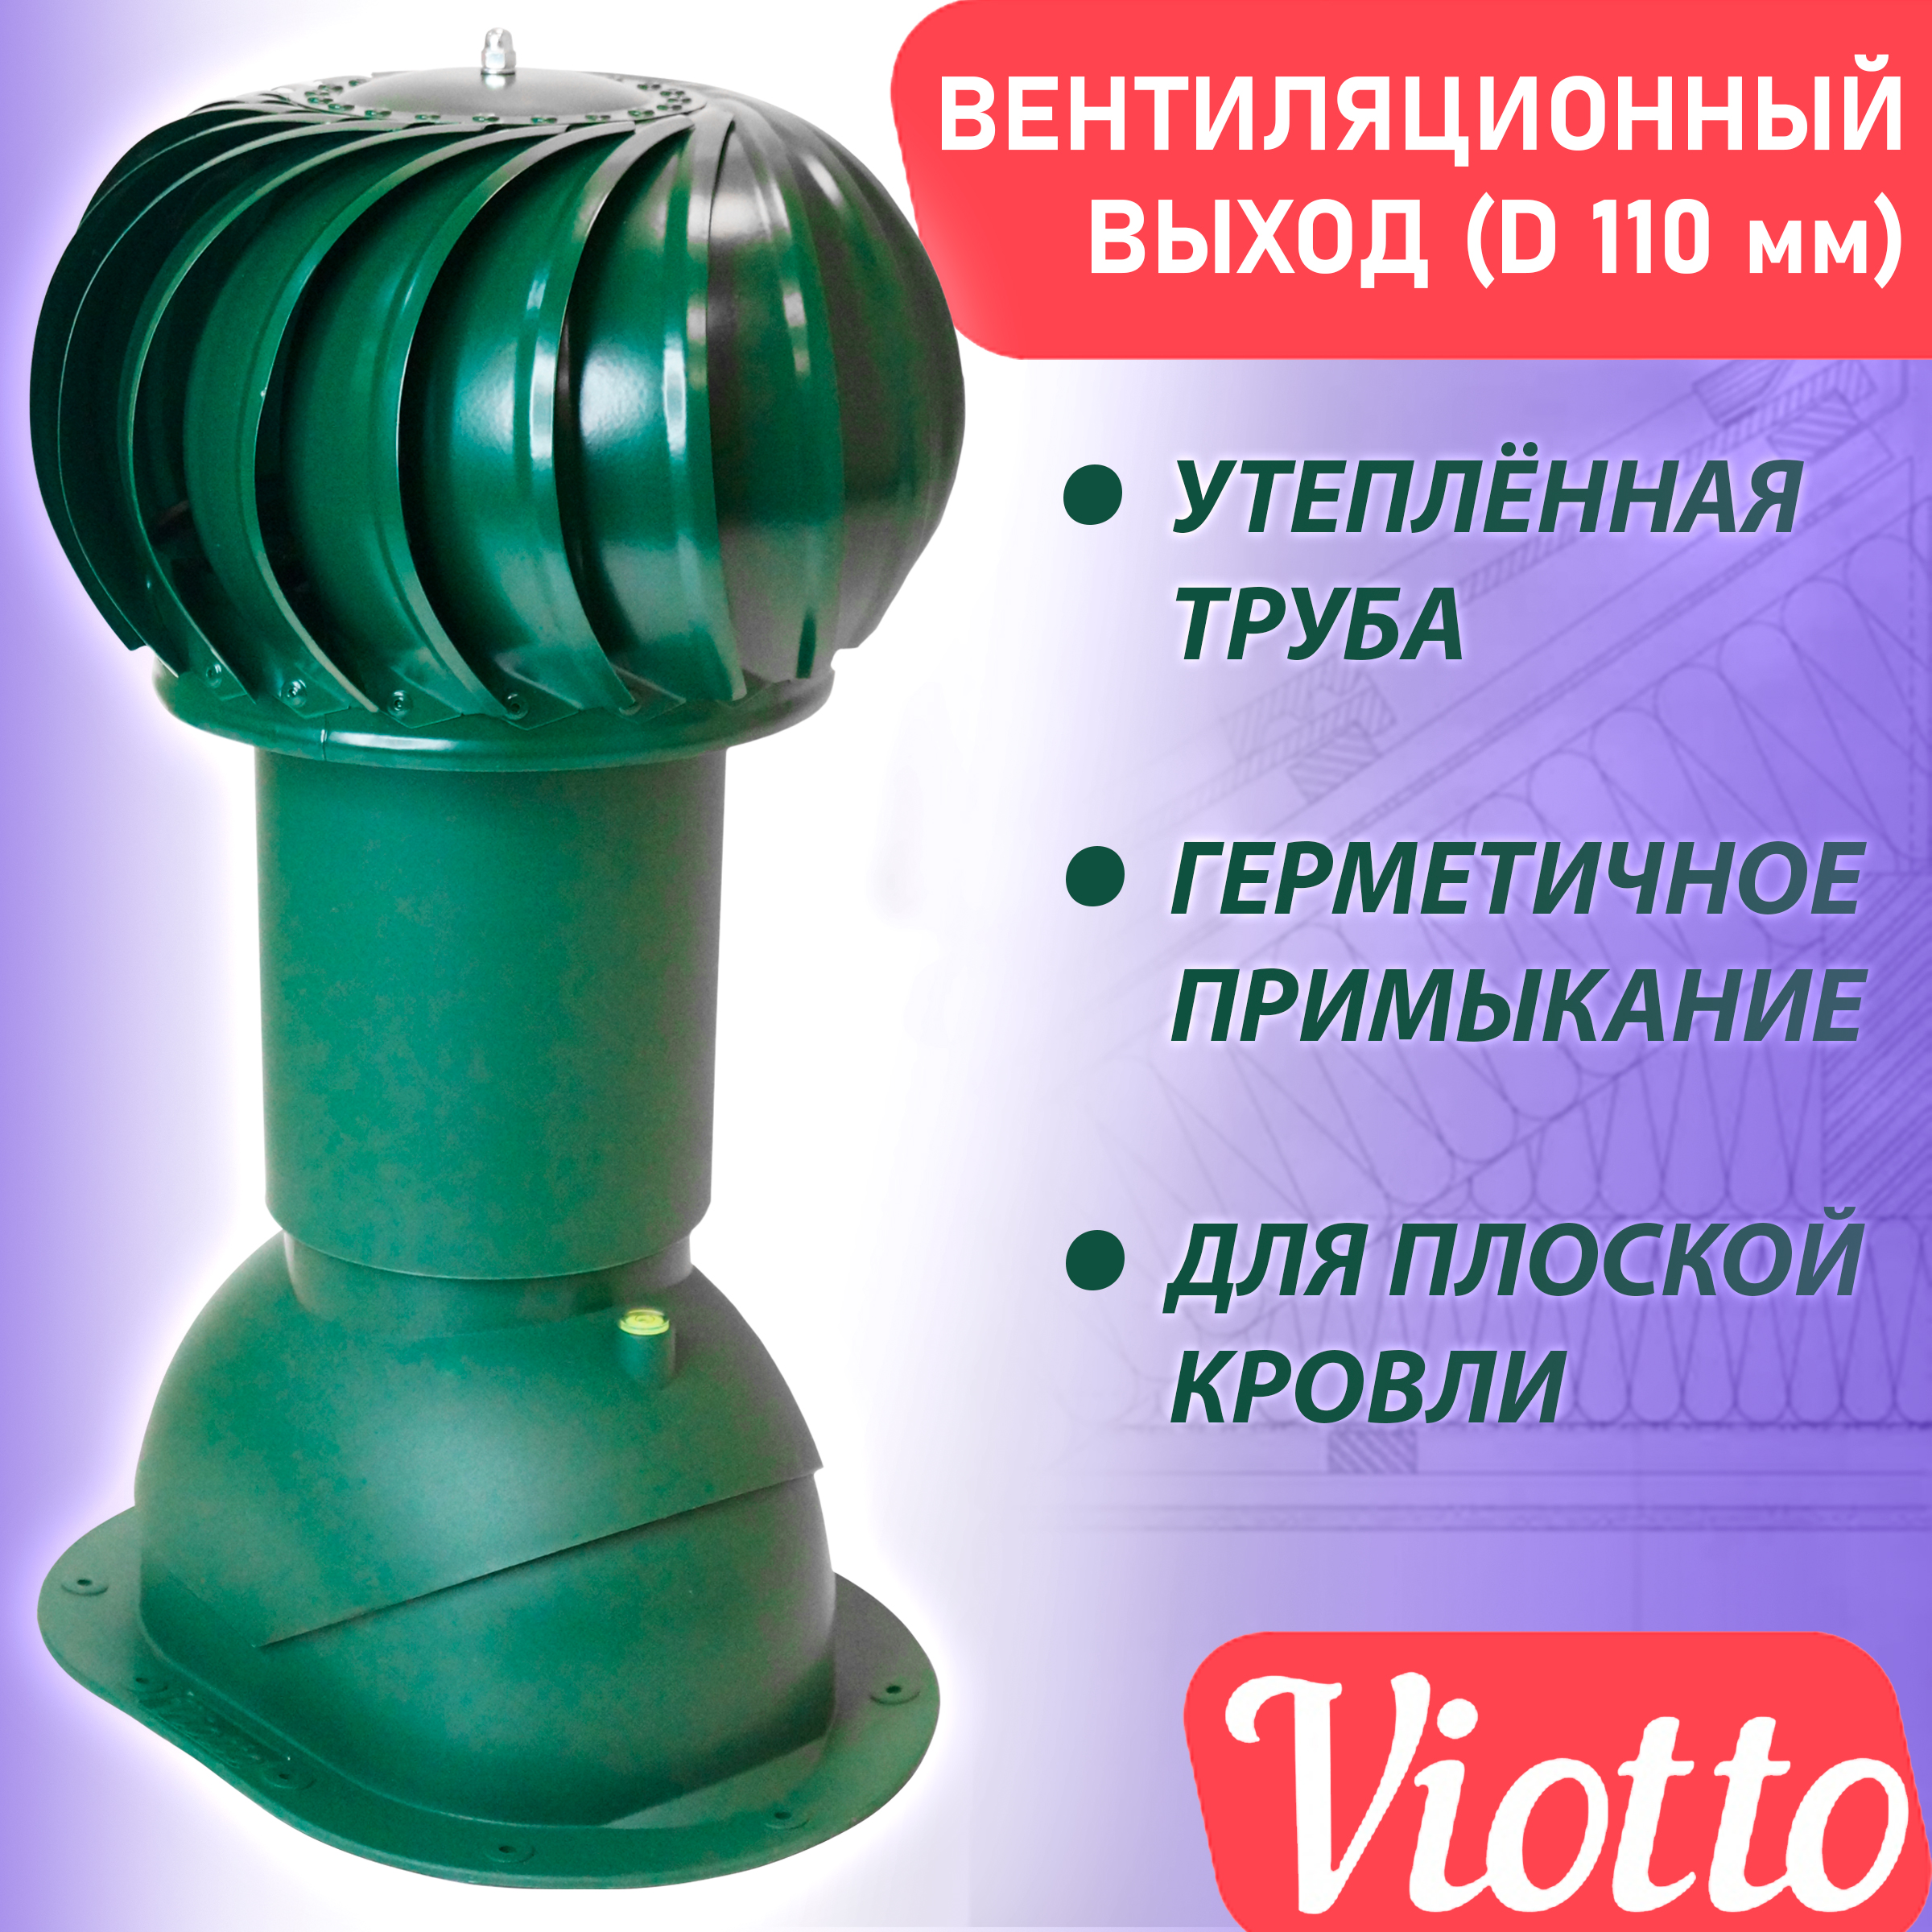 фото Труба вентиляционная роторная viotto (110 мм) ral 6005 для плоской кровли, фальца, гч